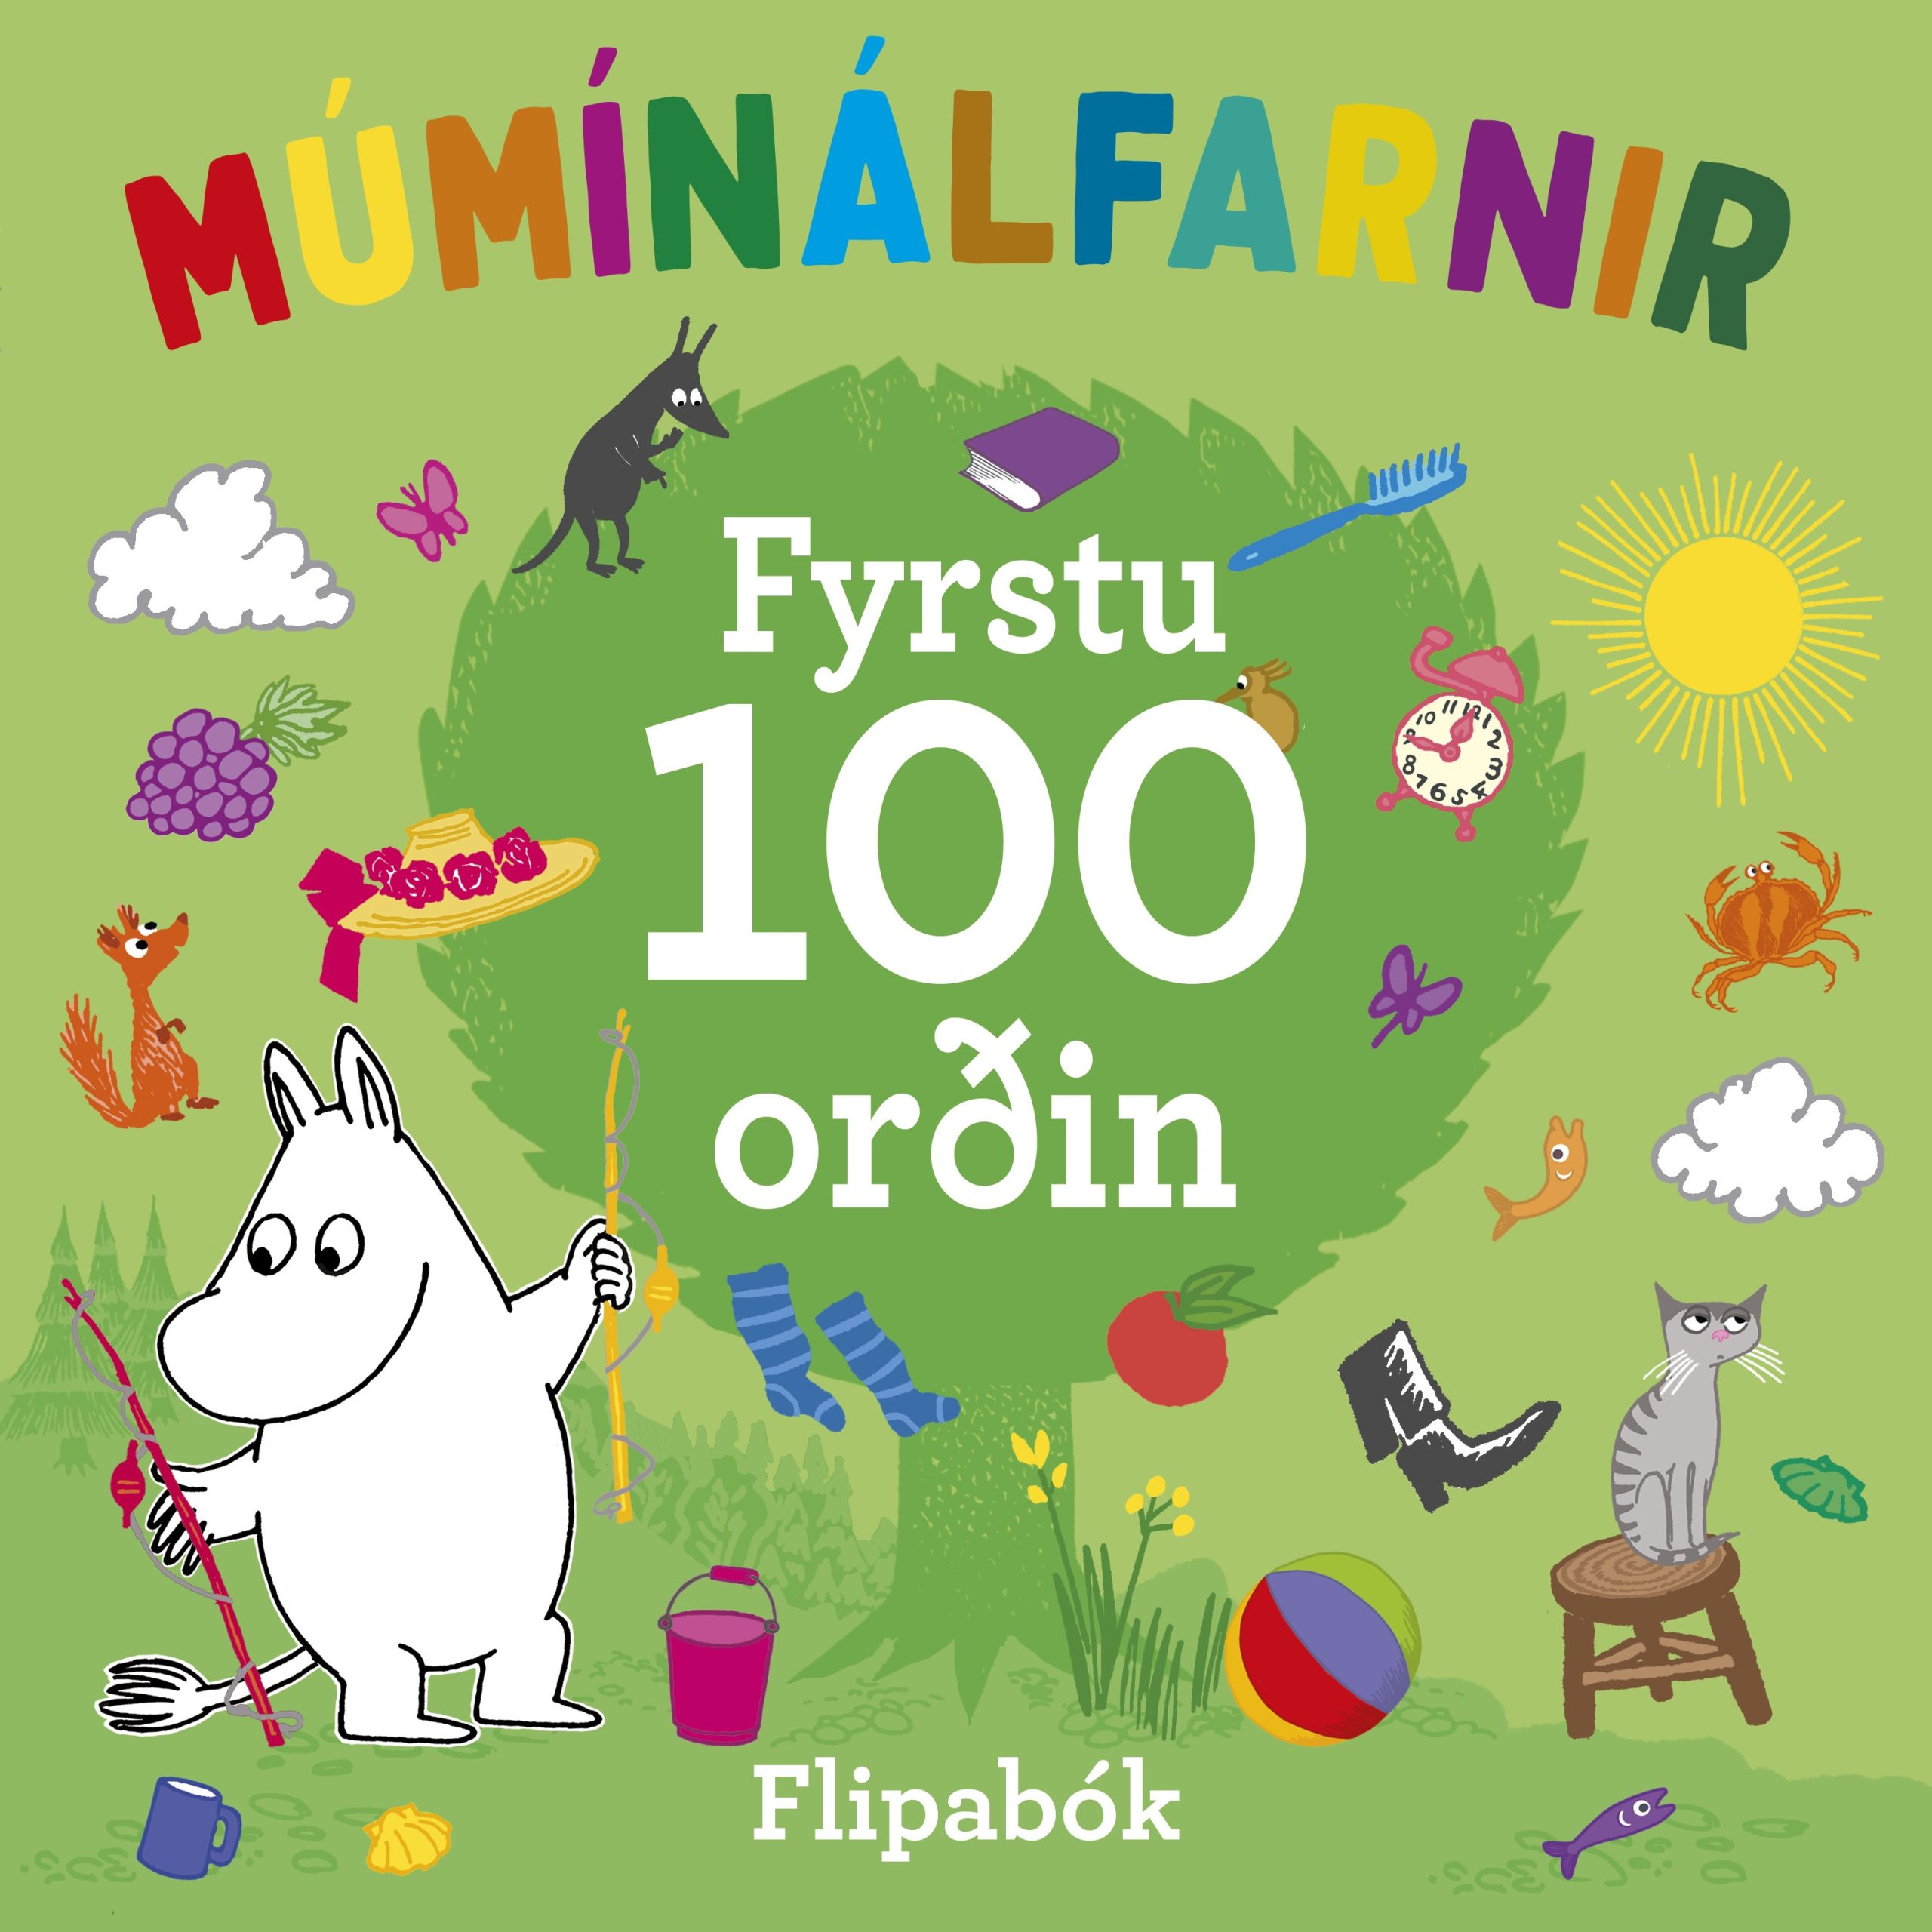 múmínálfarnir fyrstu 100 orðin